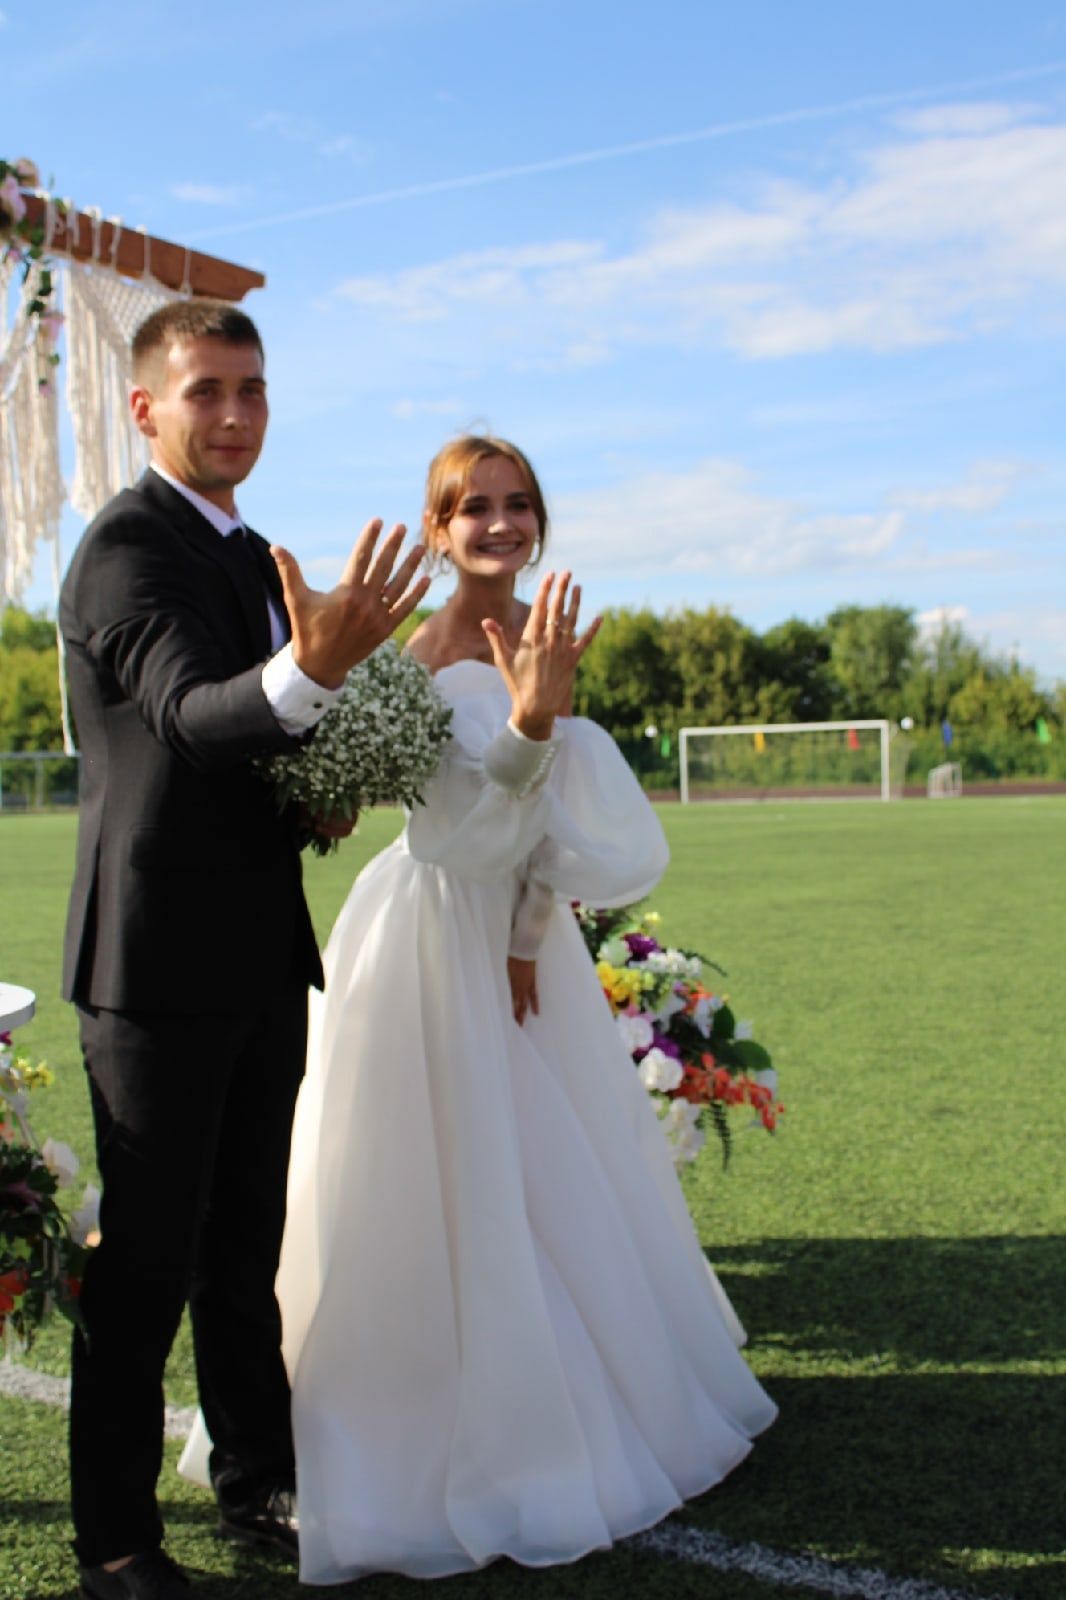 В Чистополе прошла необычная свадьба на стадионе «Татнефть Олимп»